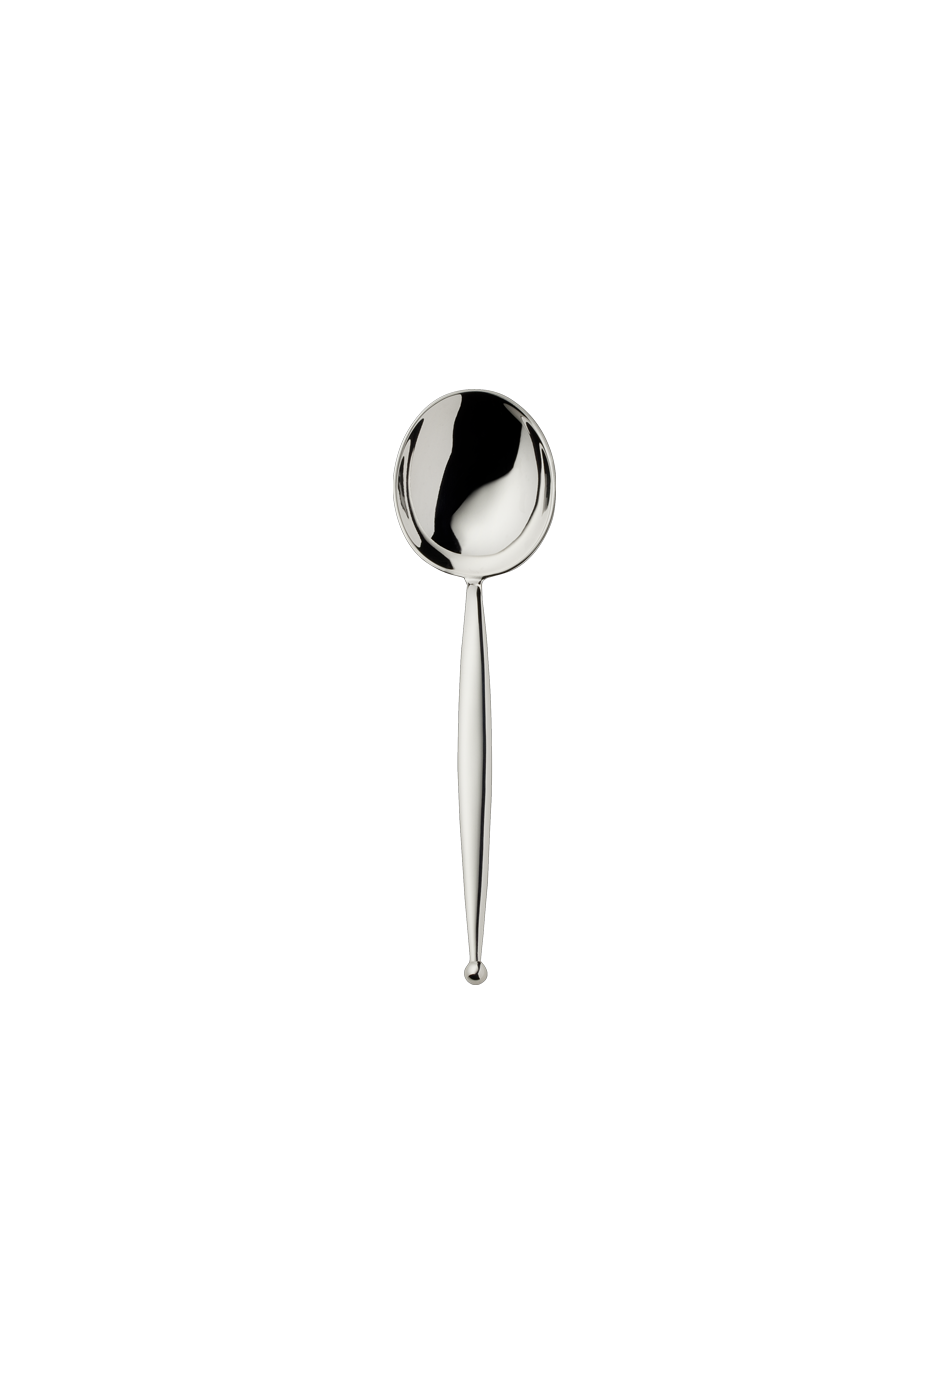 Gio Sugar Spoon (150g massive silverplated)